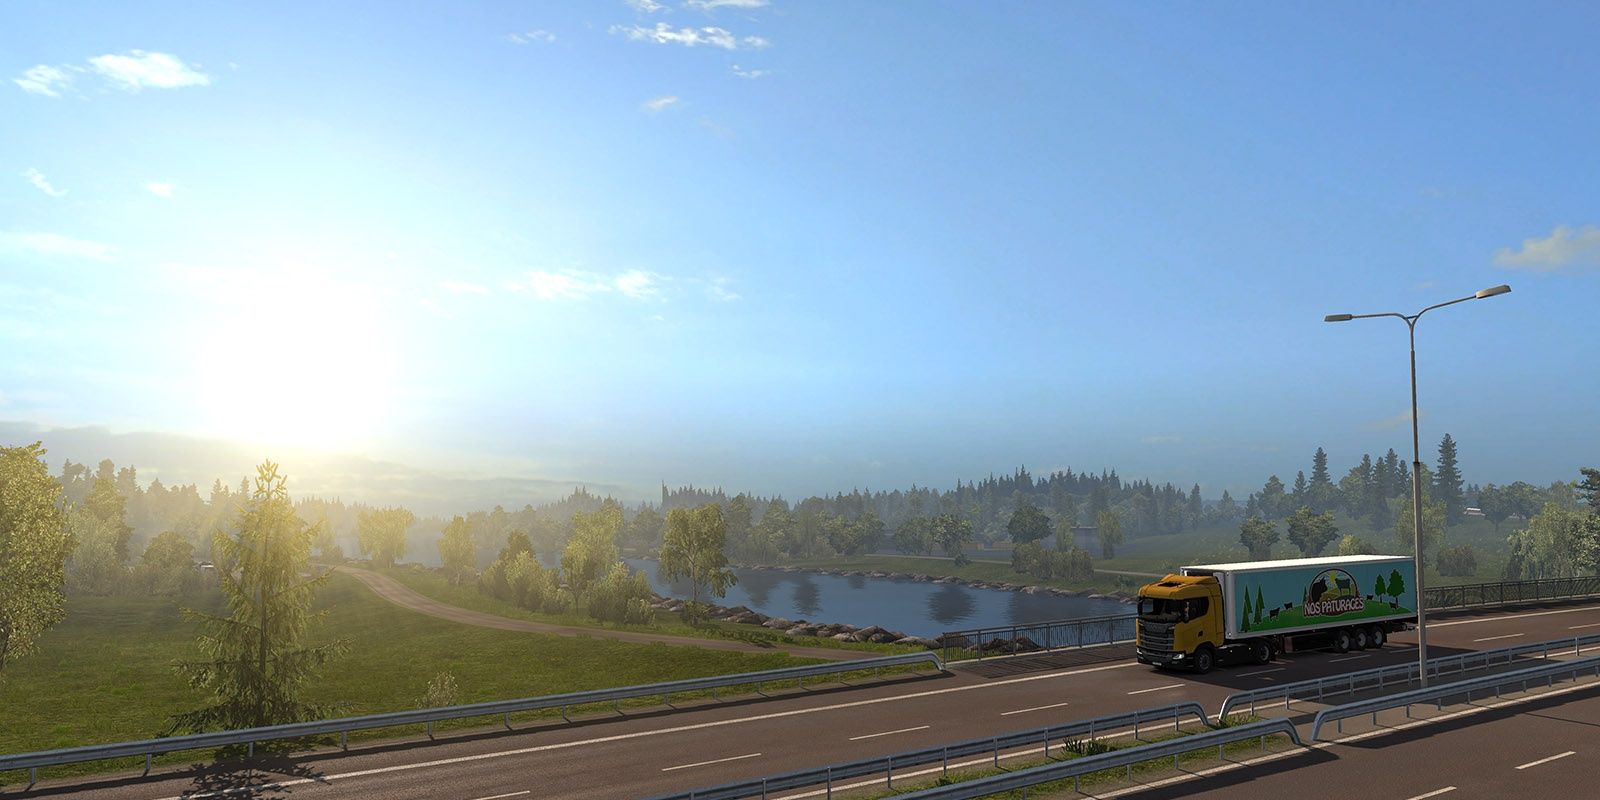 Realistic Graphics Mod in Euro Truck Simulator 2